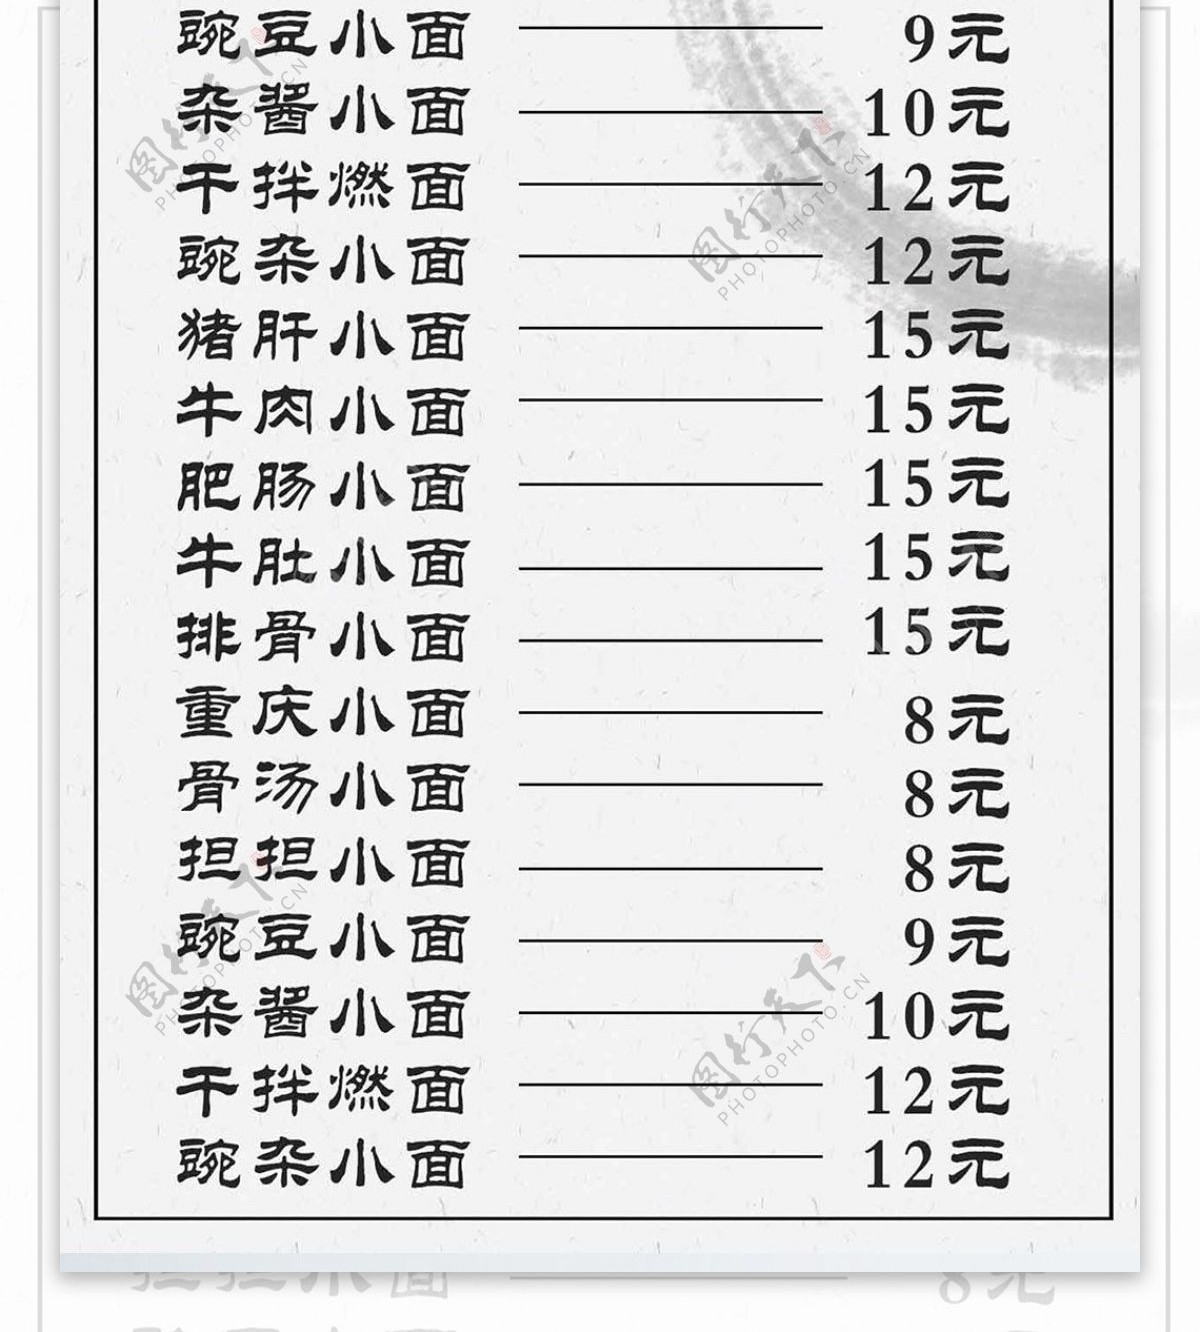 白色简约中国风重庆小面菜谱设计